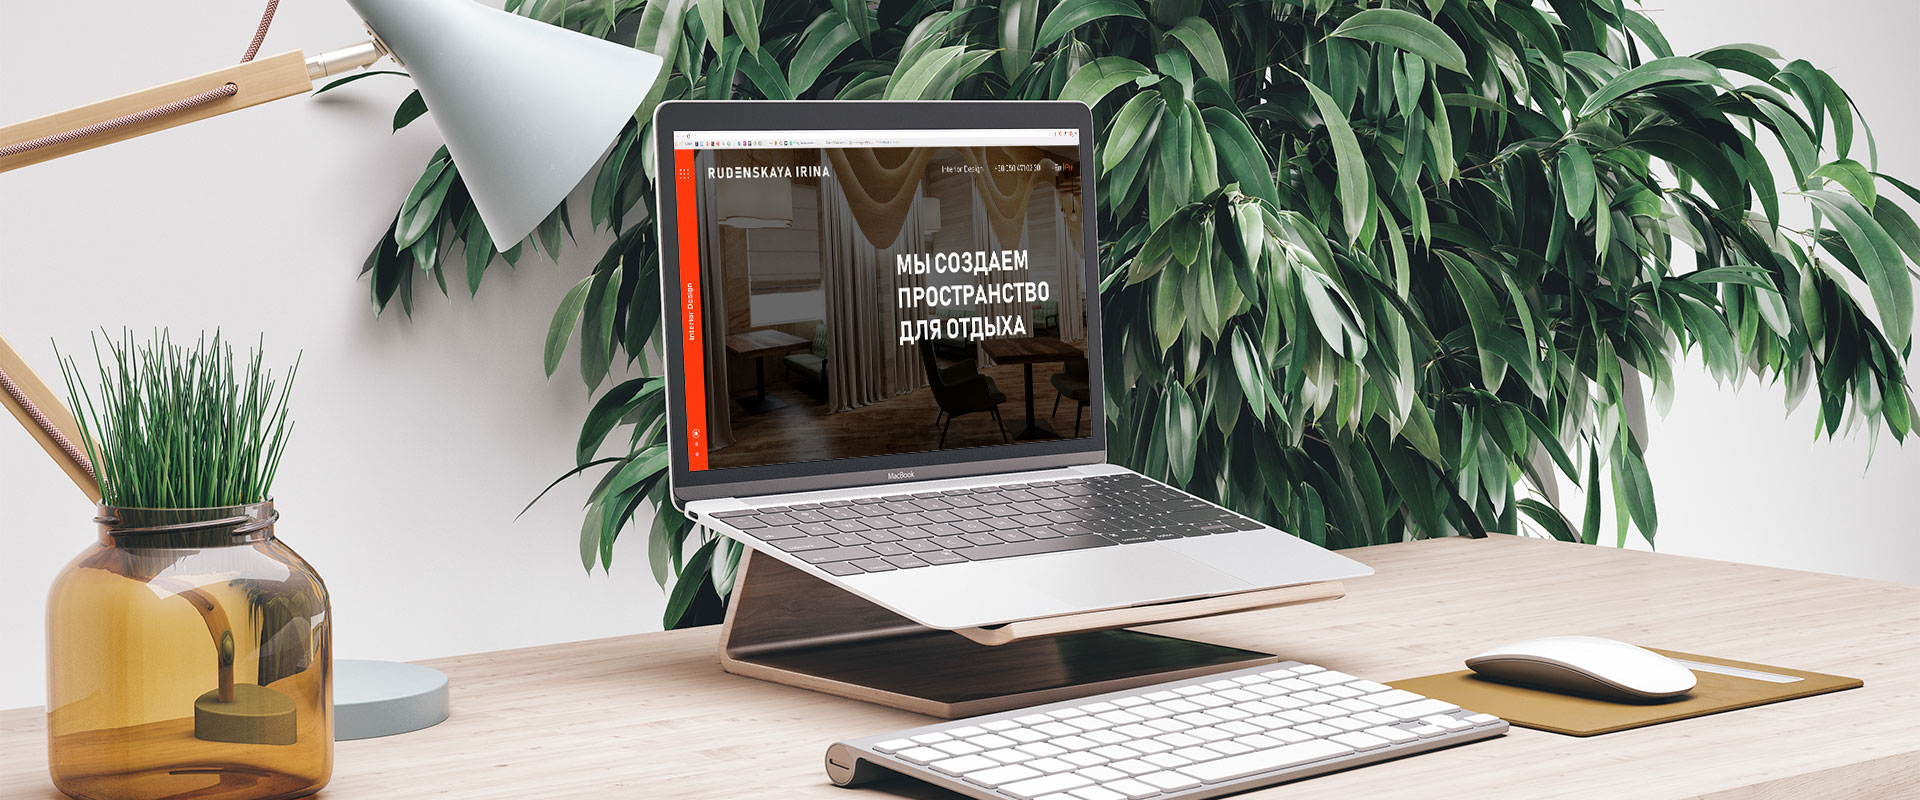 Создание корпоративного сайта для дизайнера интерьеров Ирины Руденской